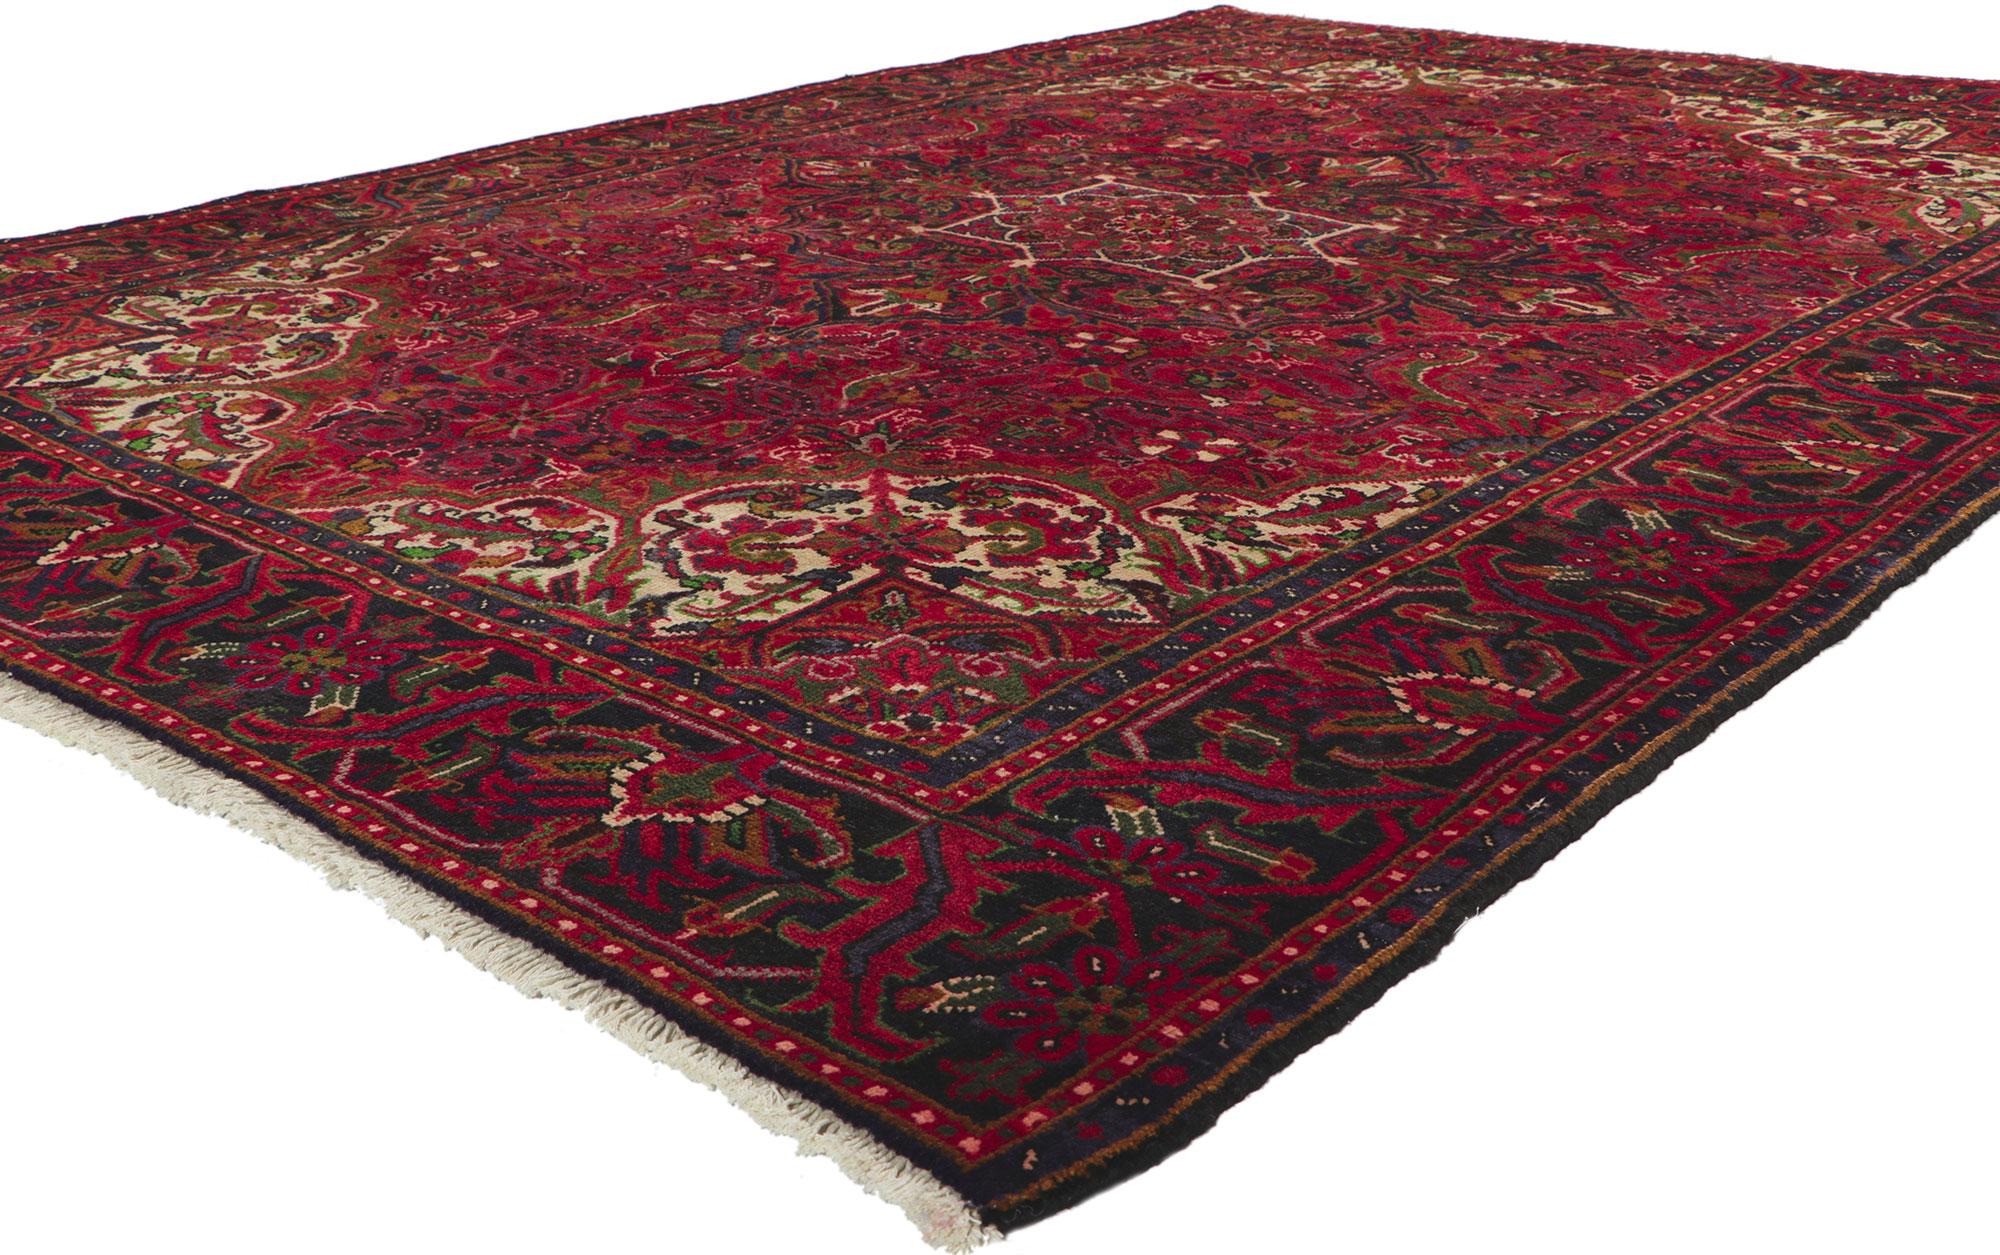 61042 Vintage Persian Heriz Rug 06'09 x 09'04.
Warm und einladend mit zeitlosem Stil, ist dieser handgeknüpfte alte persische Heriz-Teppich aus Wolle eine fesselnde Vision von gewebter Schönheit. Die Komposition besteht aus einem konzentrischen